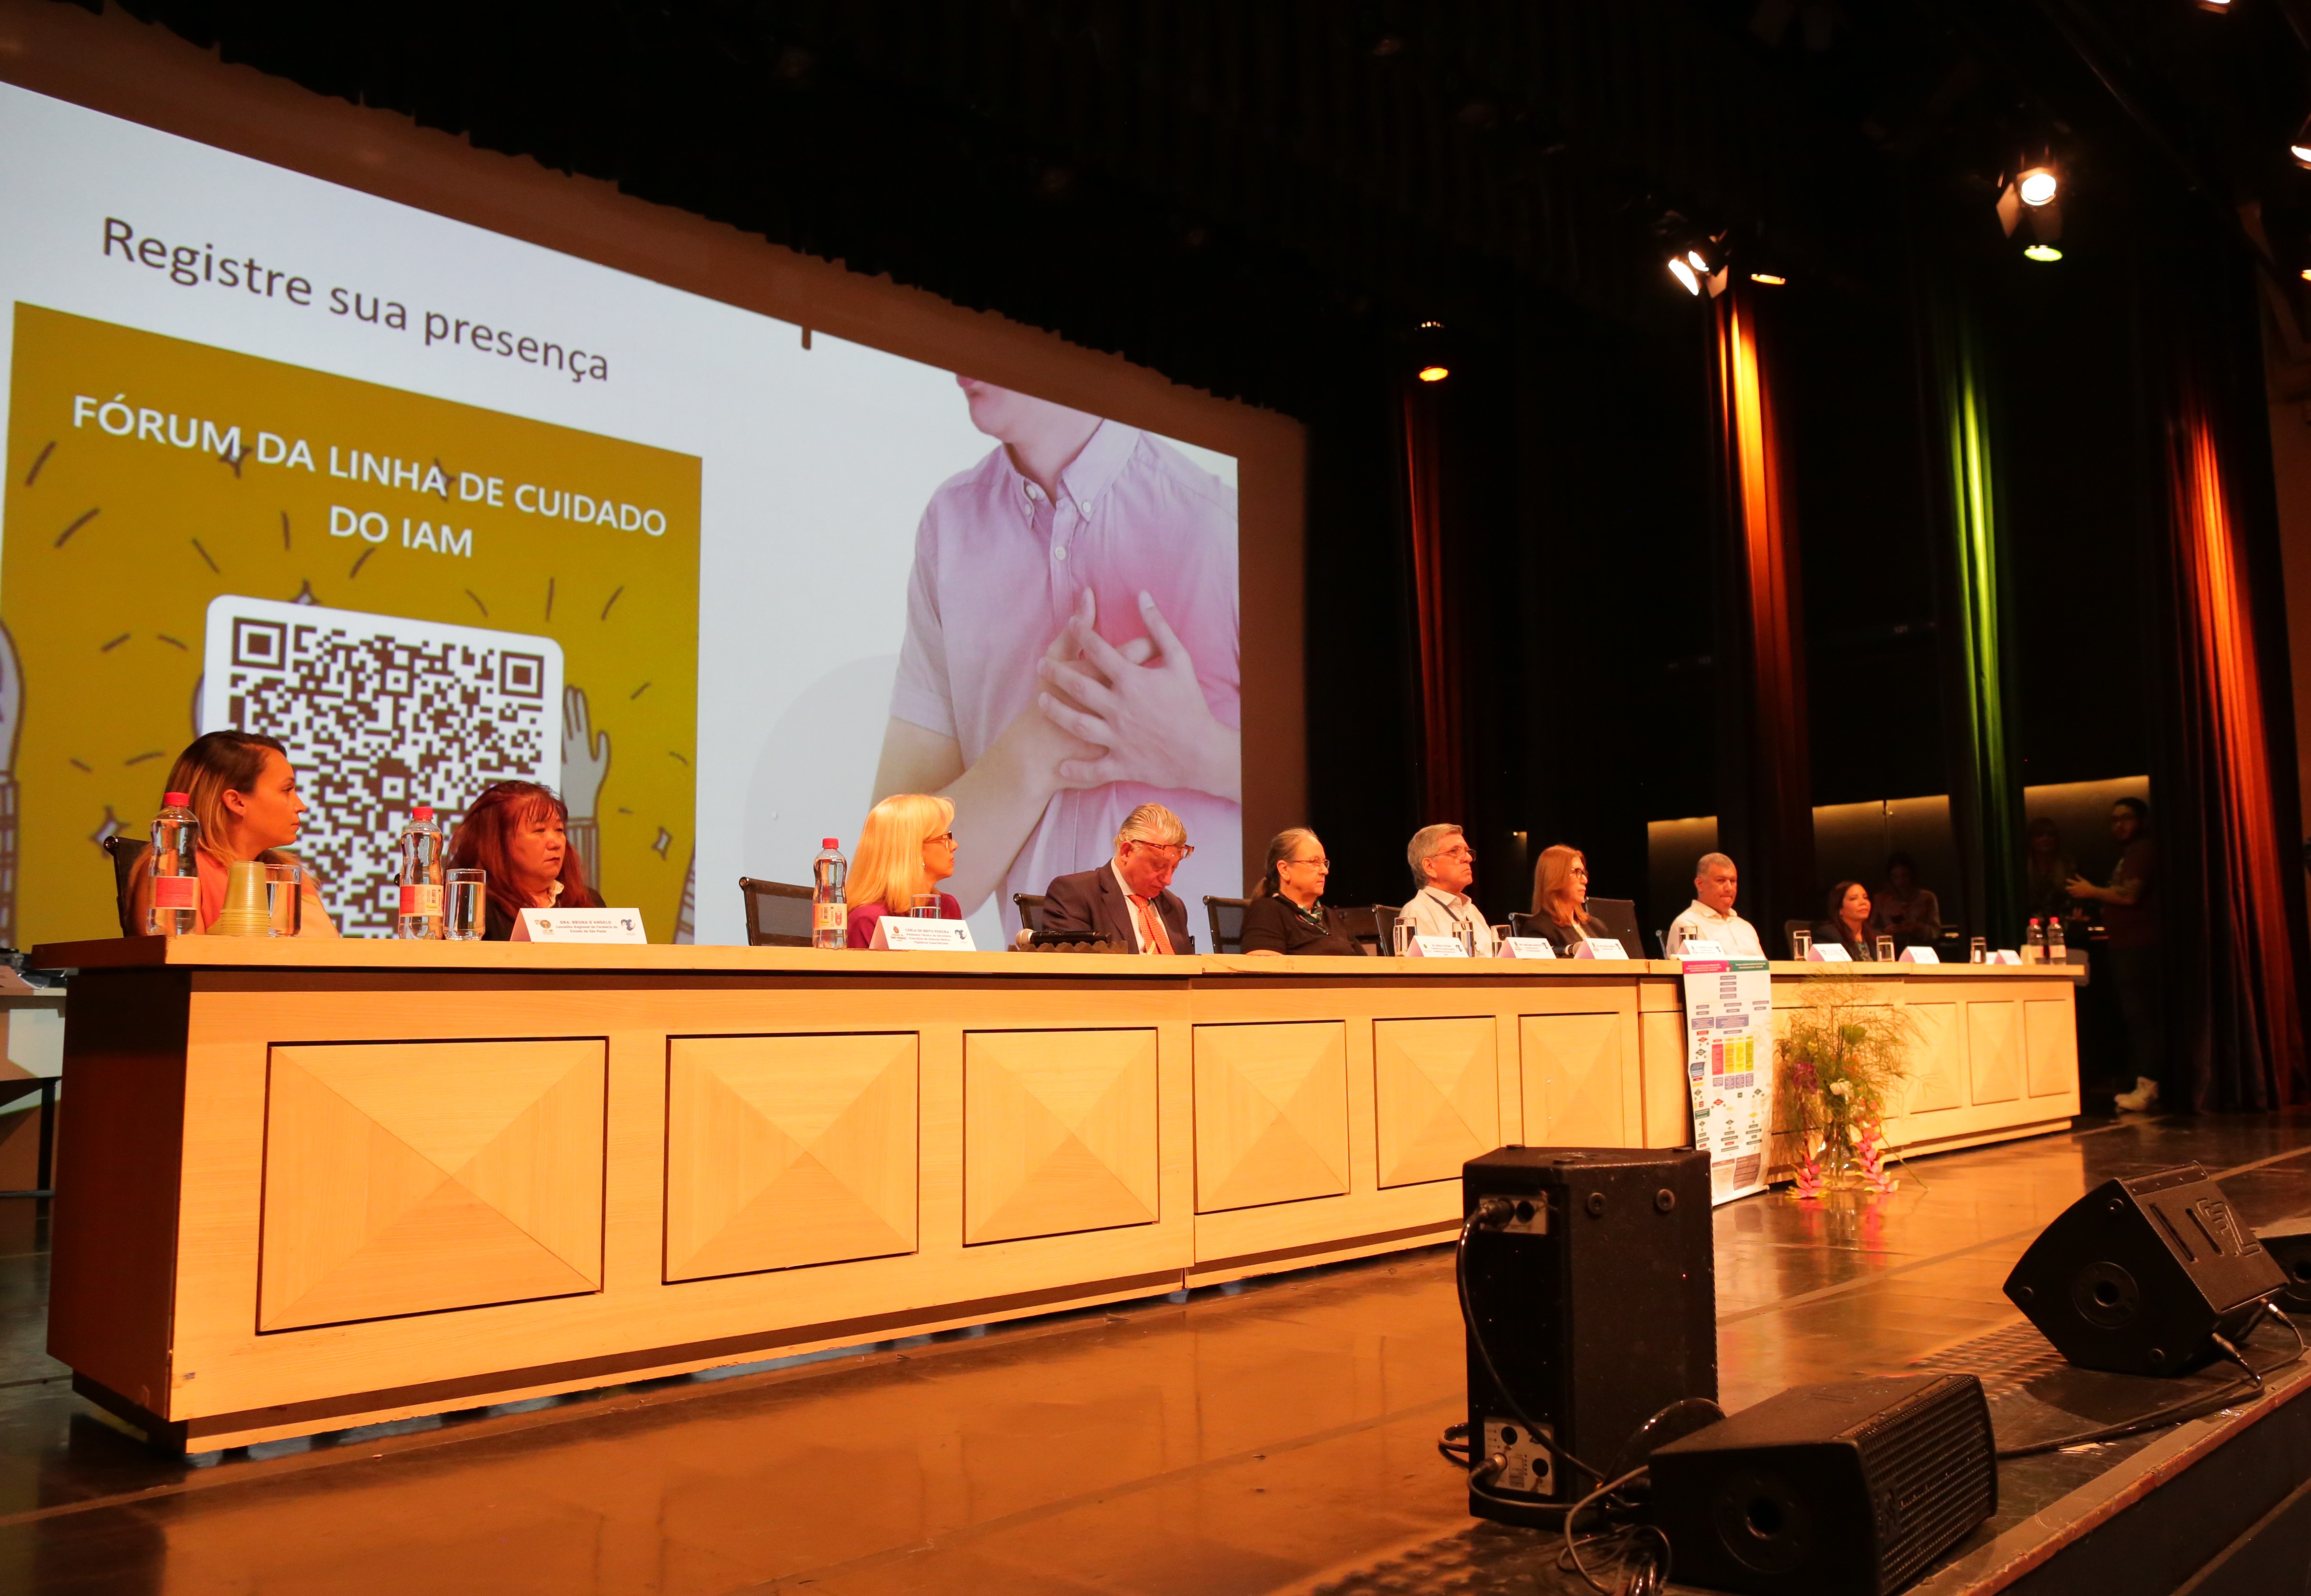 A foto mostra uma mesa em um evento, composta por vários homens e mulheres (ao fundo, vê-se um painel onde está escrito "Fórum da Linha de Cuidados do IAM